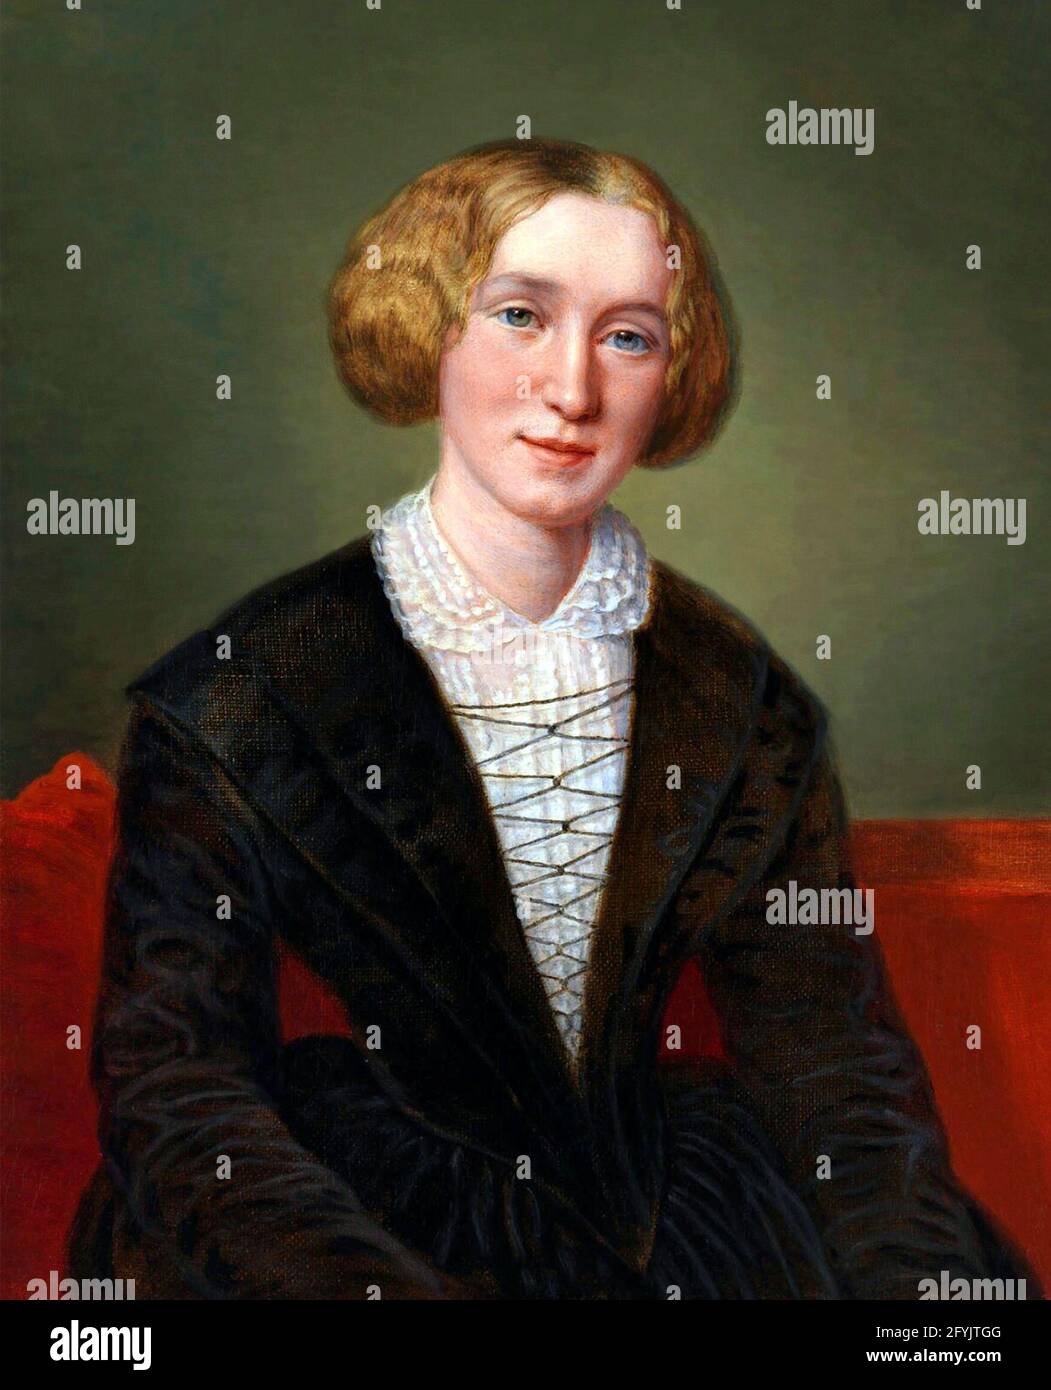 George Eliot (Mary Anne Evans - 1819-1880). Ritratto del romanziere inglese, copia dell'opera di François D’Albert Durade, olio su tela, 1849 Foto Stock